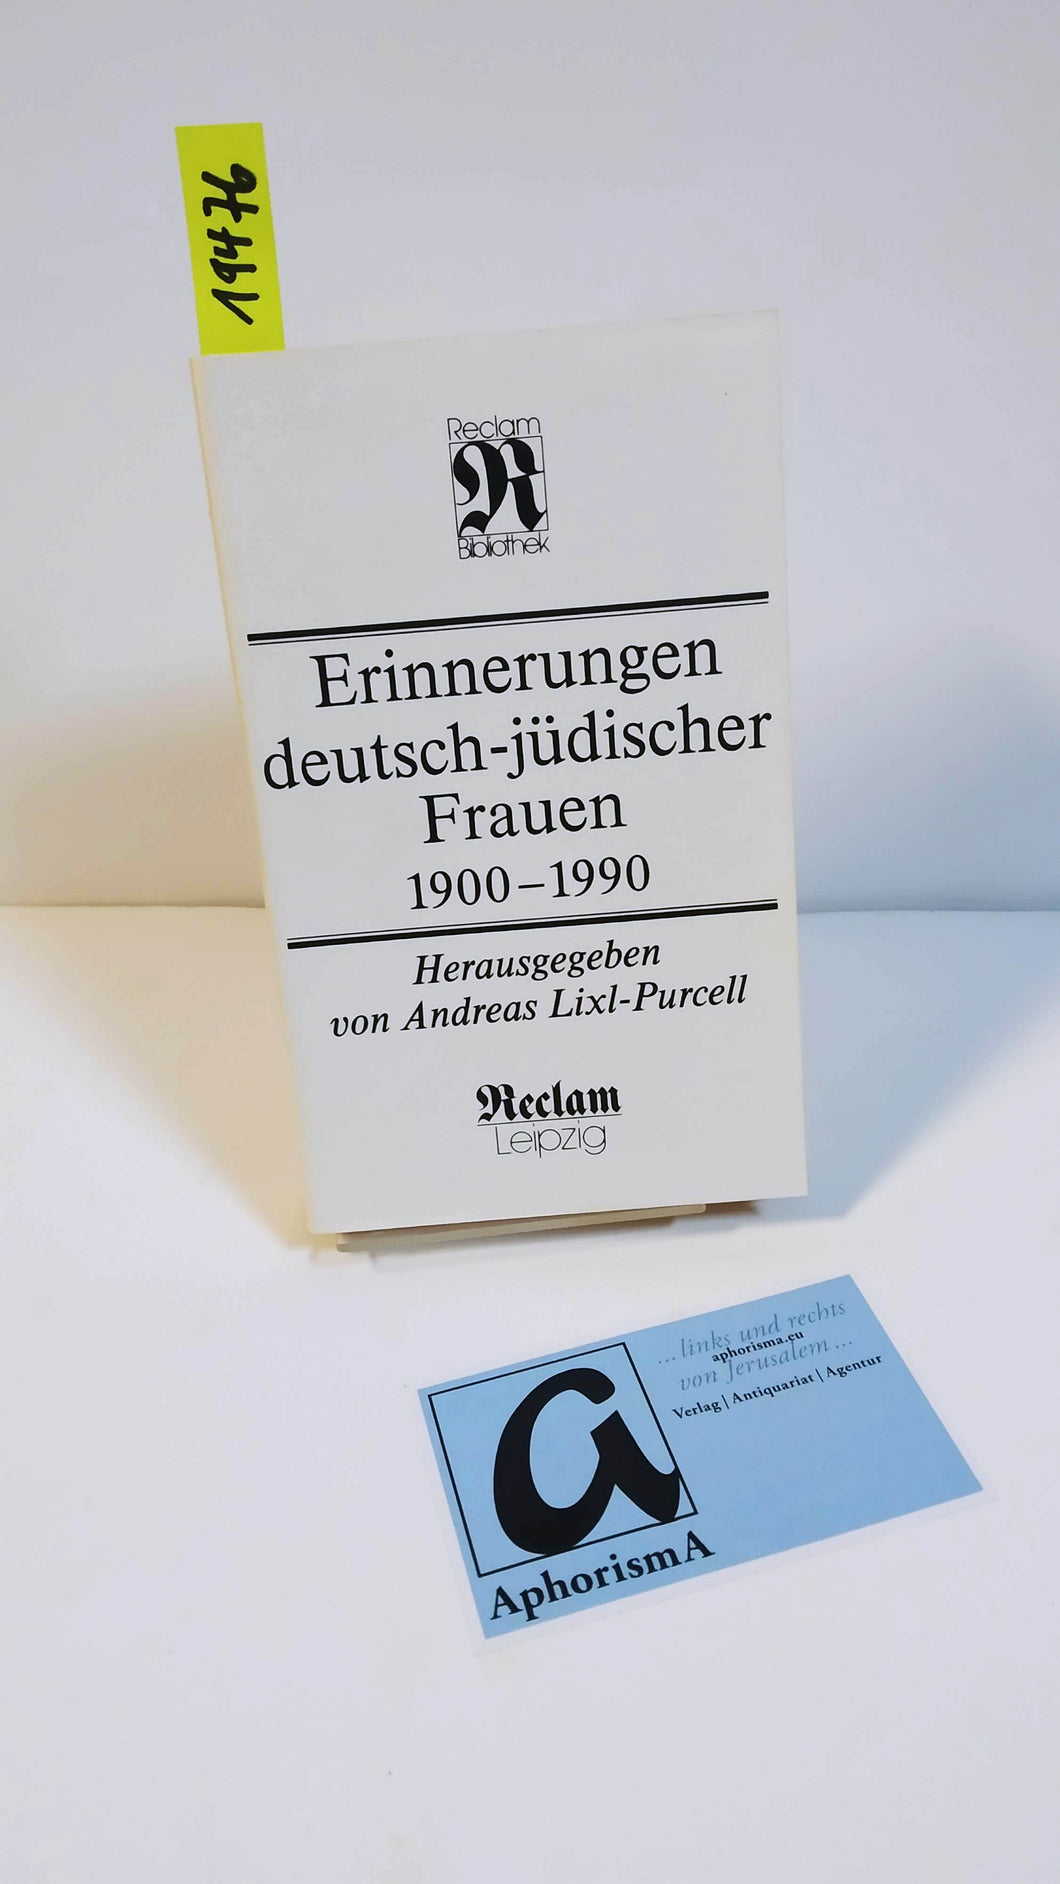 Erinnerungen deutsch-jüdischer Frauen 1900-1990